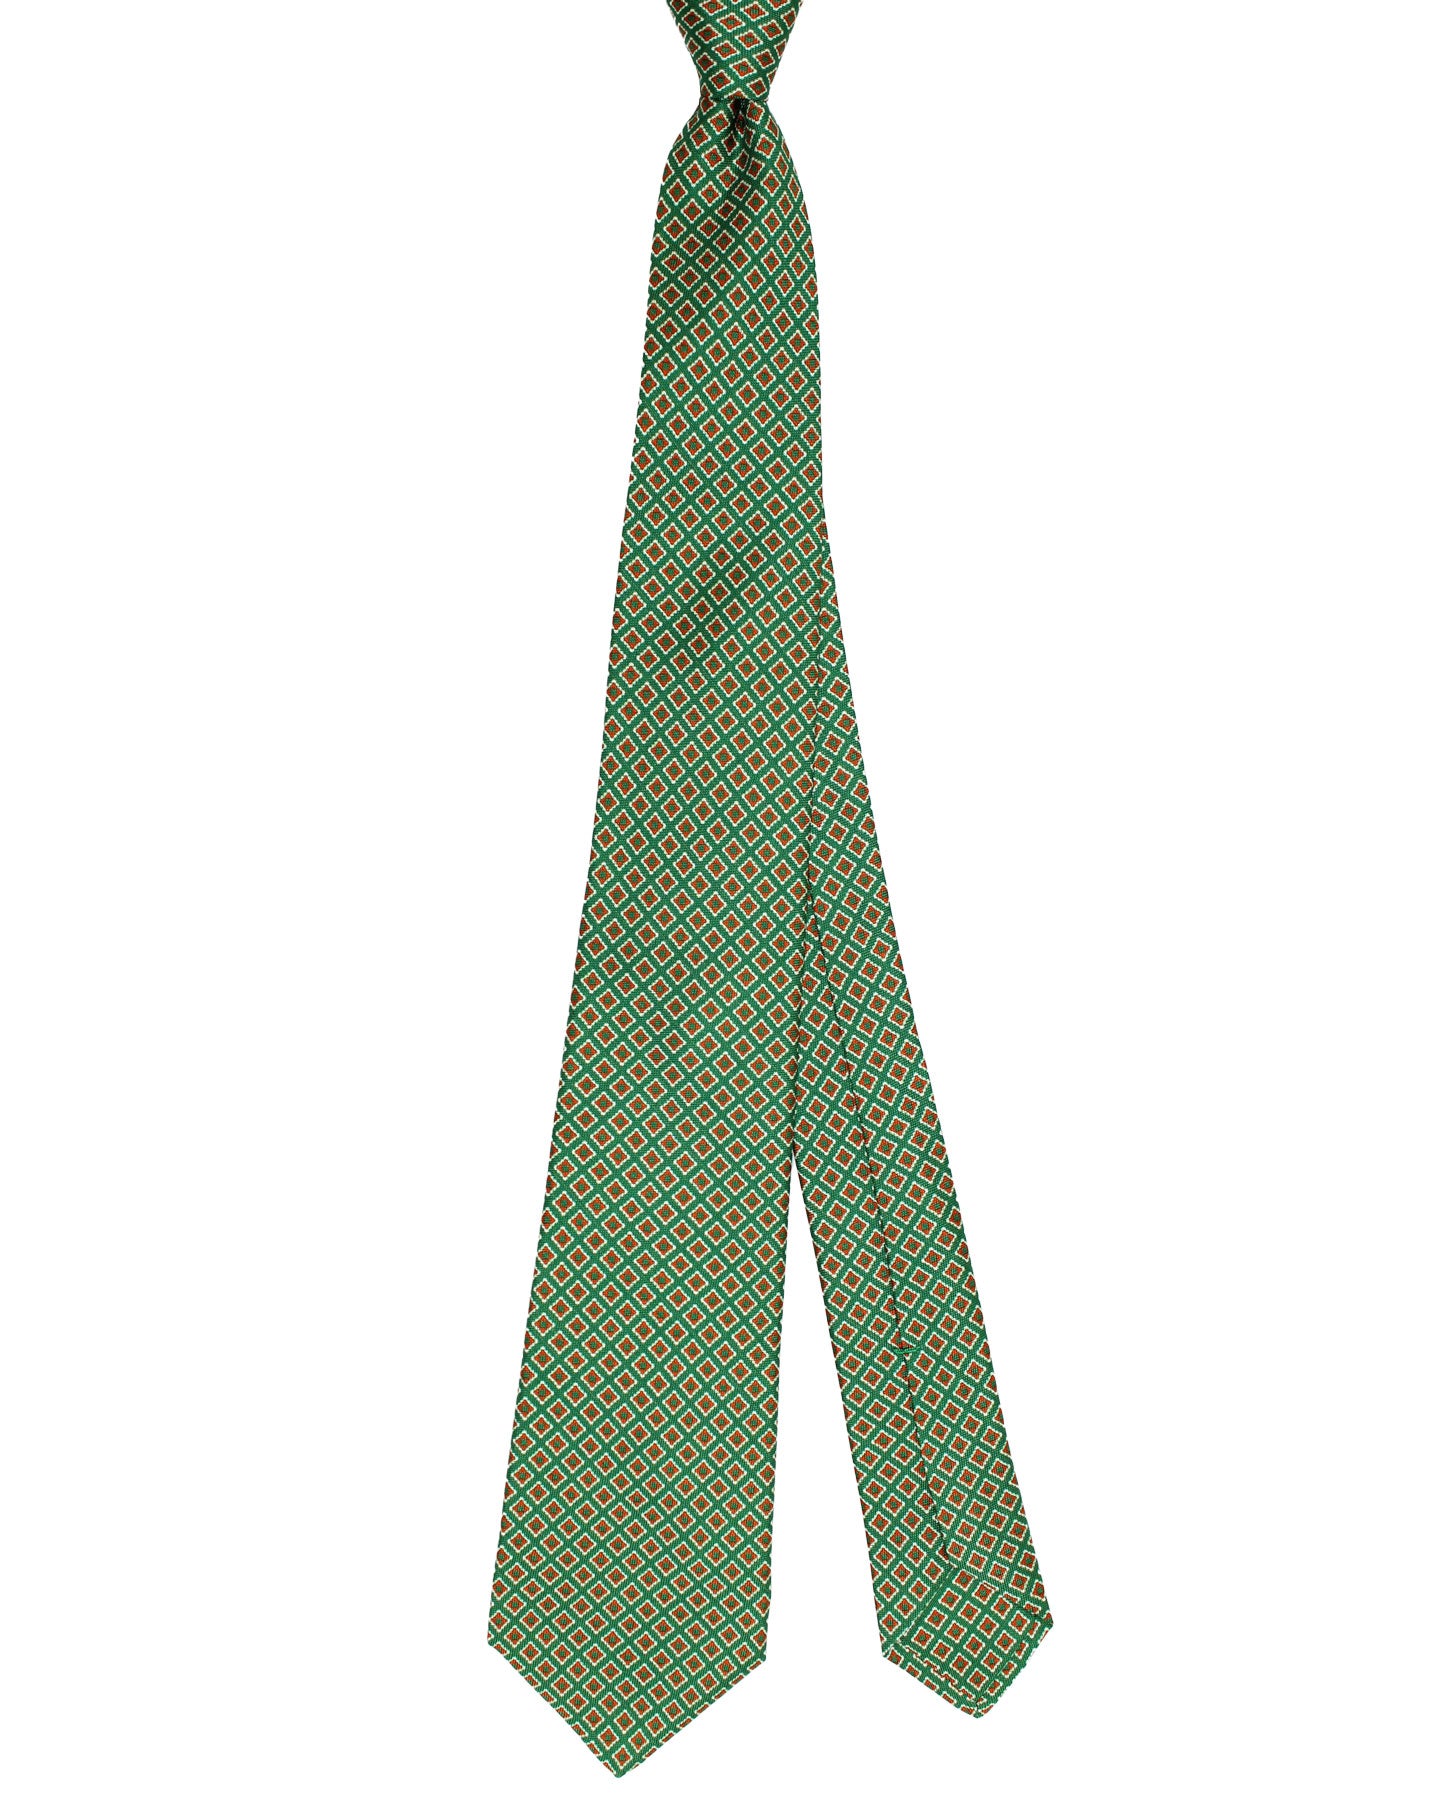 Kiton Silk Tie Green Geometric Design - Sevenfold Necktie